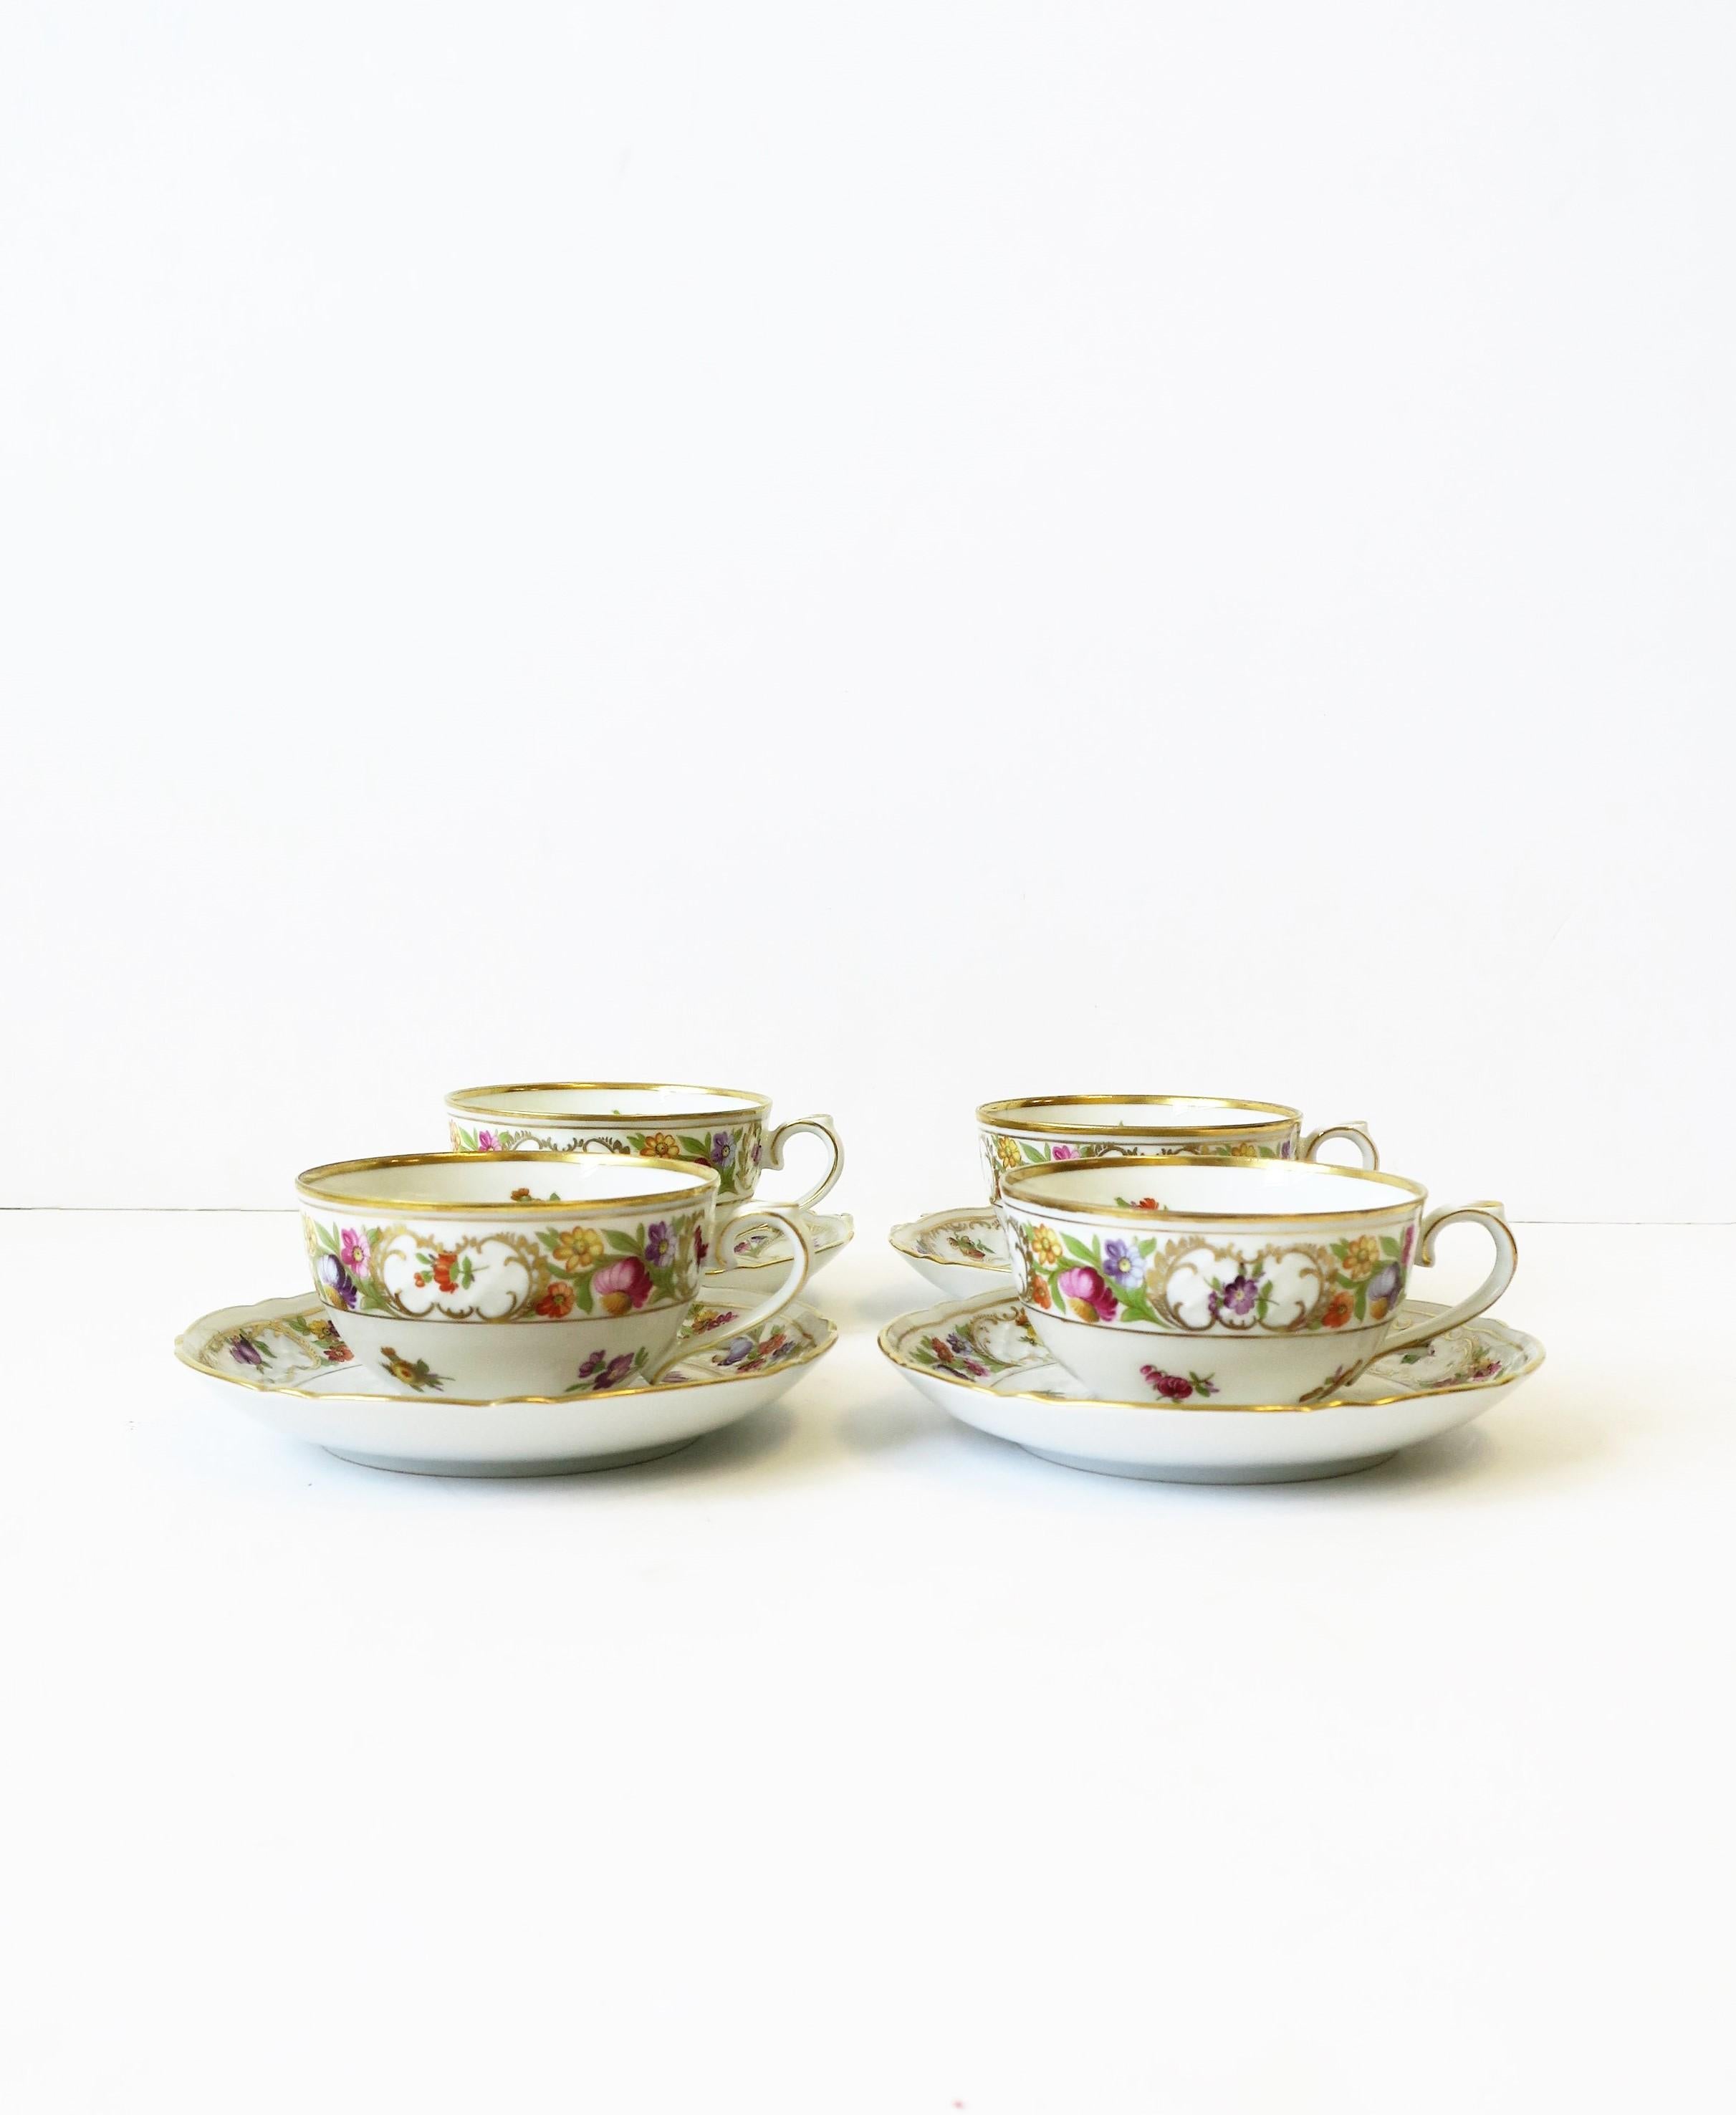 Un bel ensemble de quatre (4) tasses et soucoupes à café ou à thé en porcelaine allemande par Schumann Arzberg, Bavière, Allemagne, vers le milieu du 20e siècle. Les pièces sont dans le motif de fleurs Empress Dresdner, comme indiqué sur le dessous.